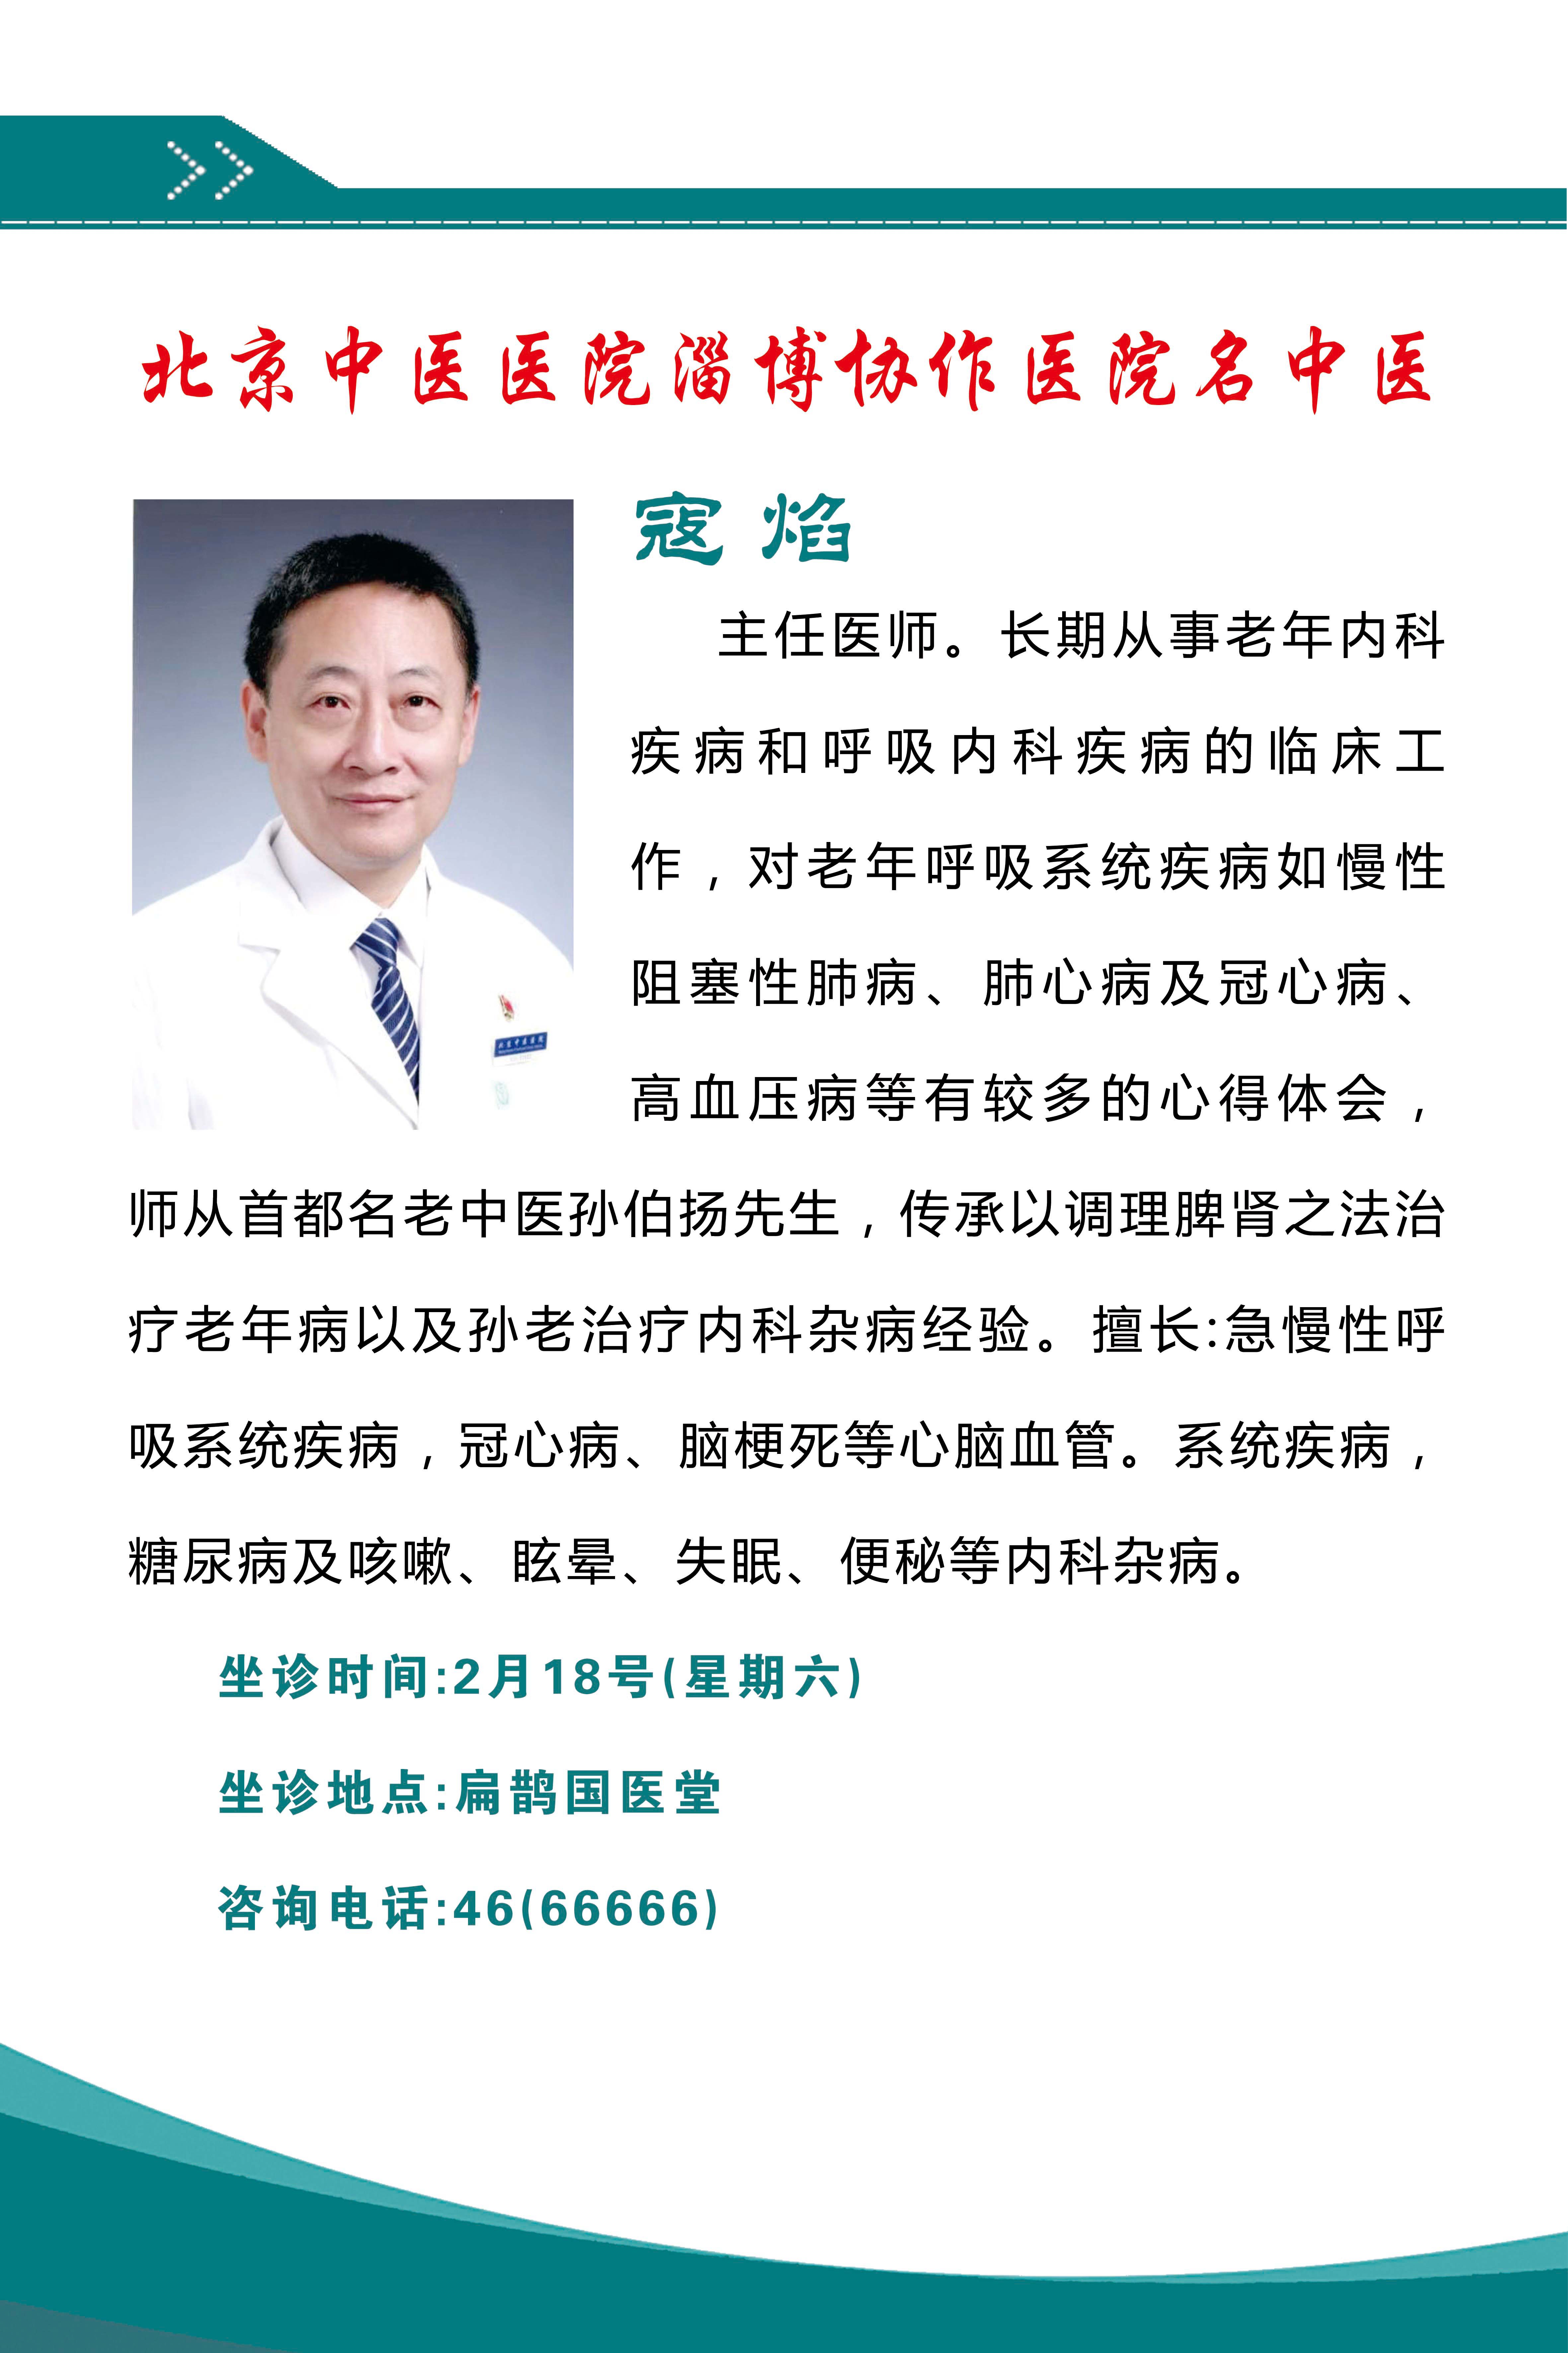 本周六（2月18日），北京名中医来淄博万杰肿瘤医院坐诊